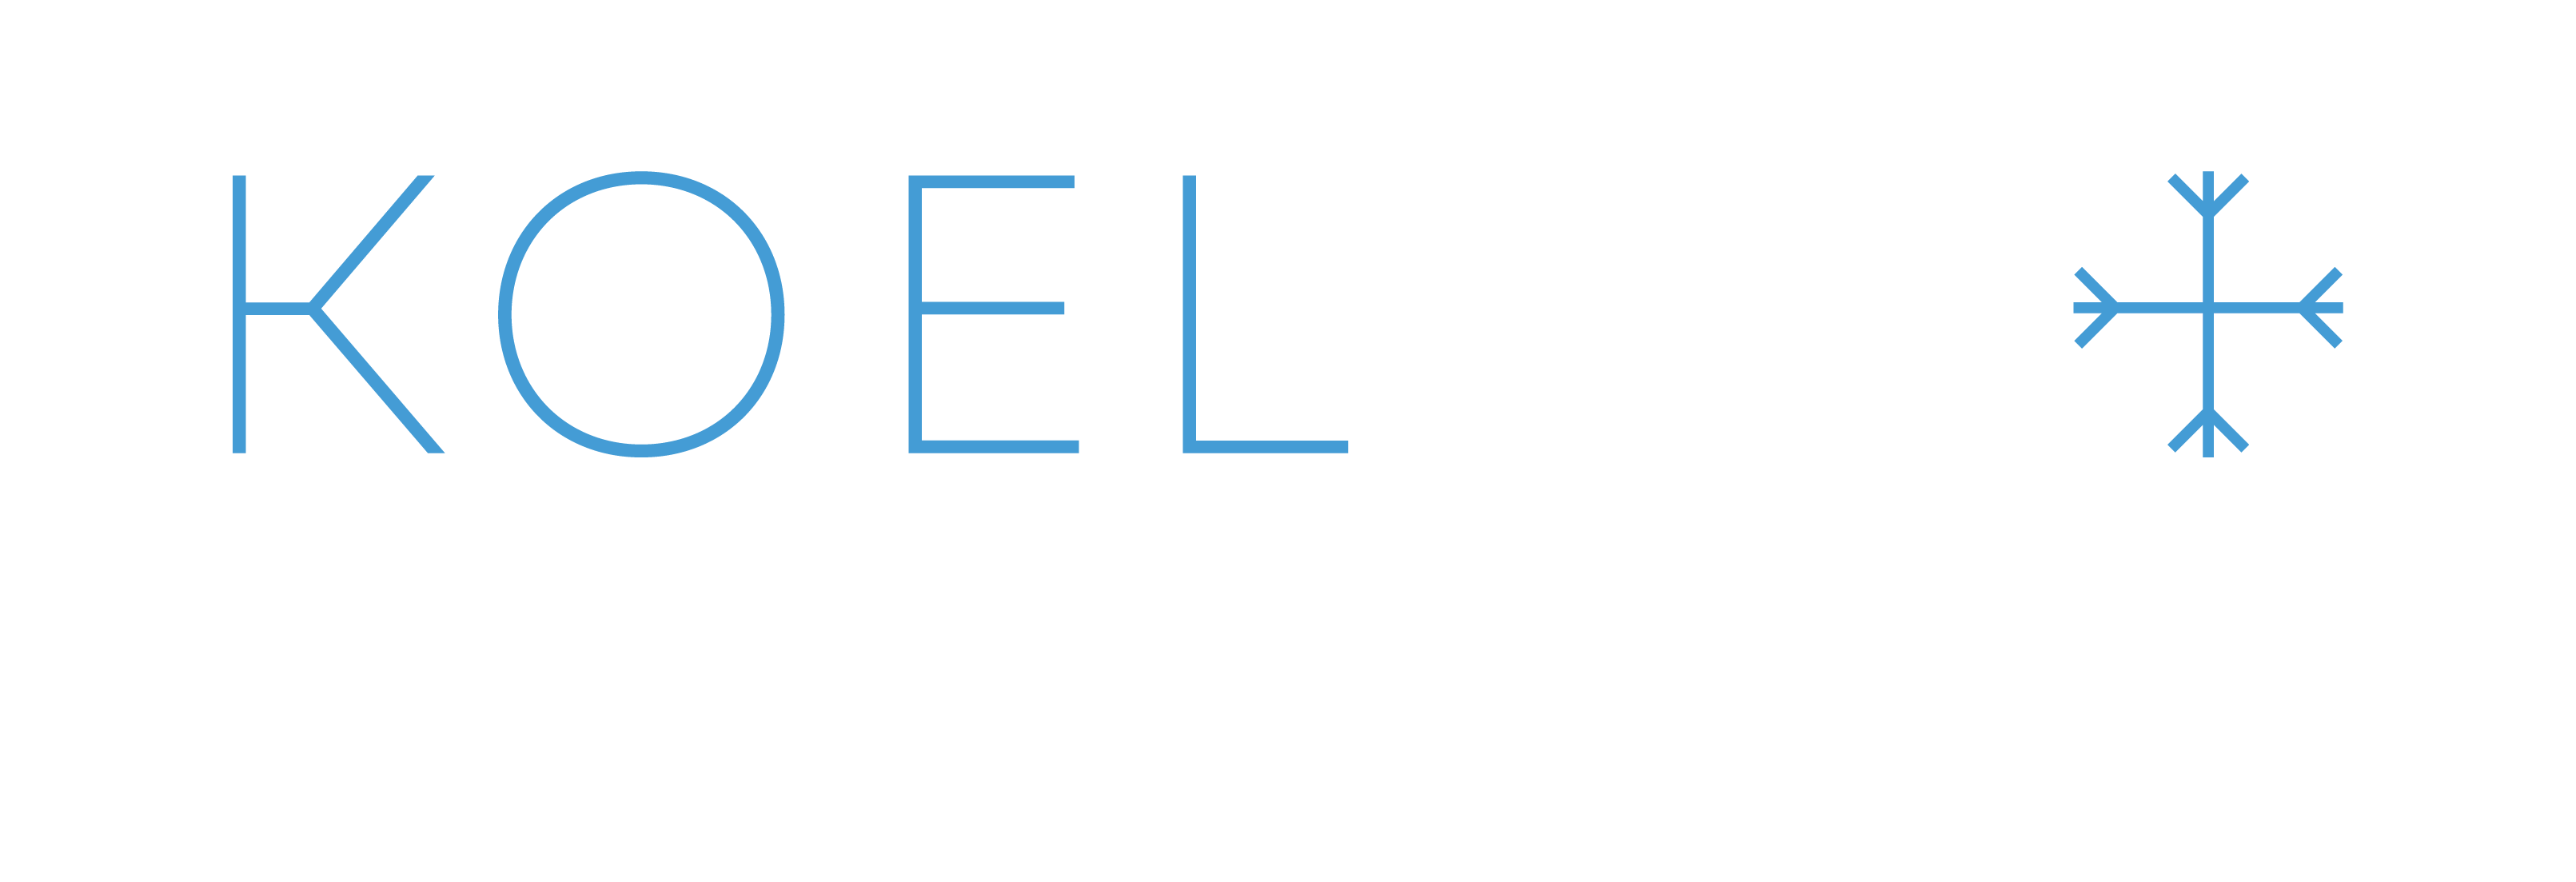 Koelbox On Wheels